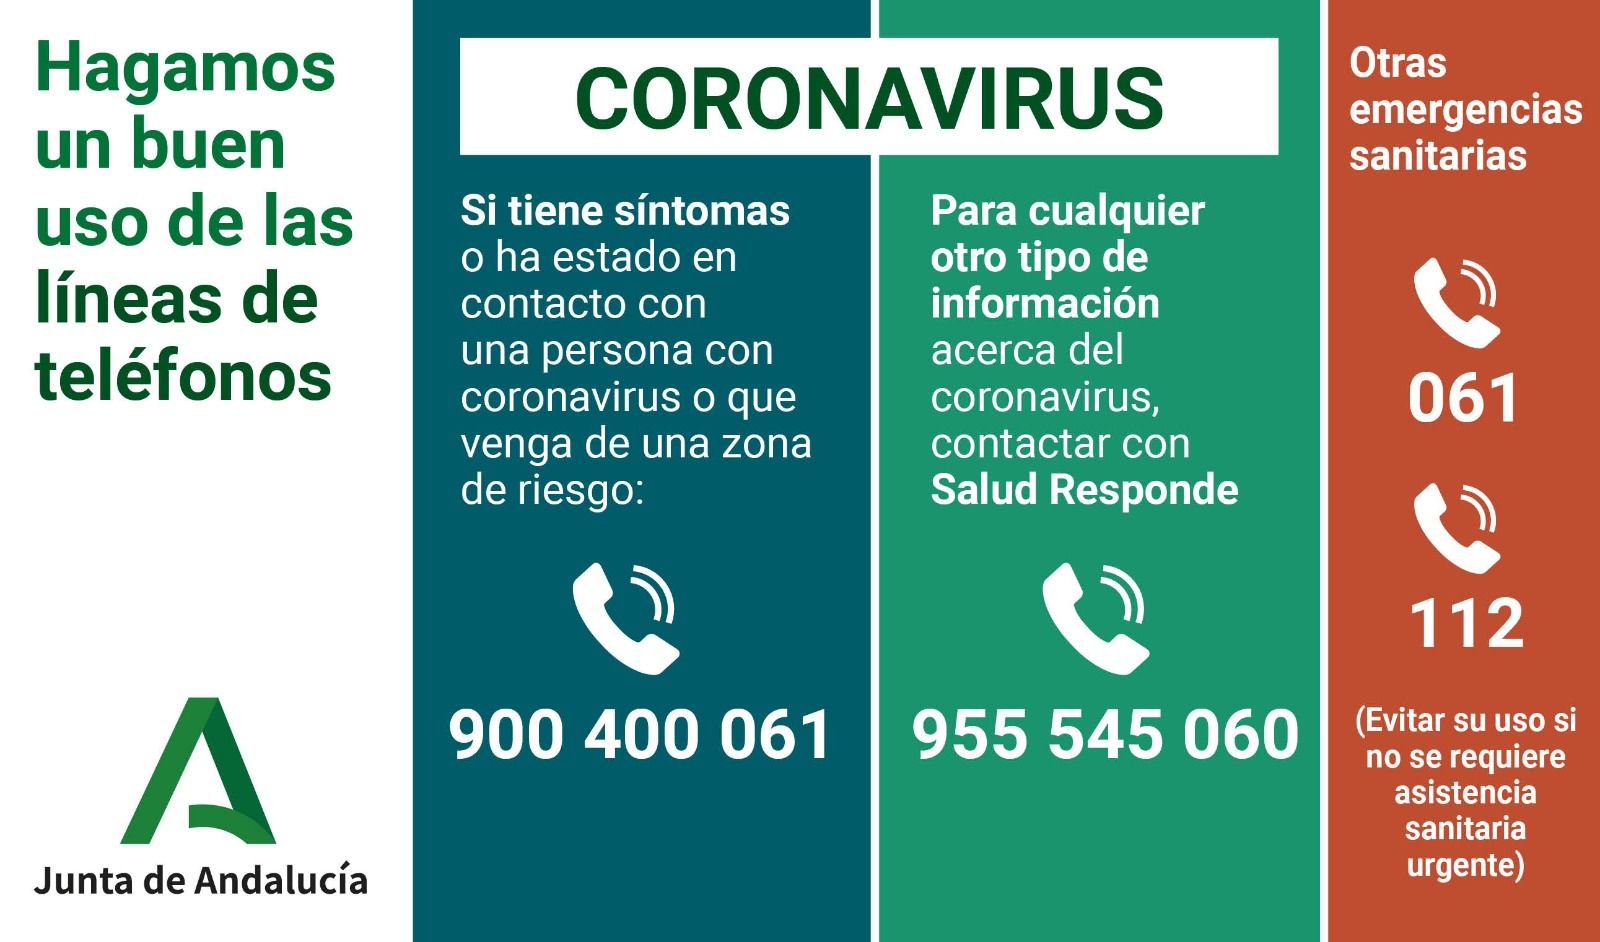 Coronavirus: teléfonos de interés